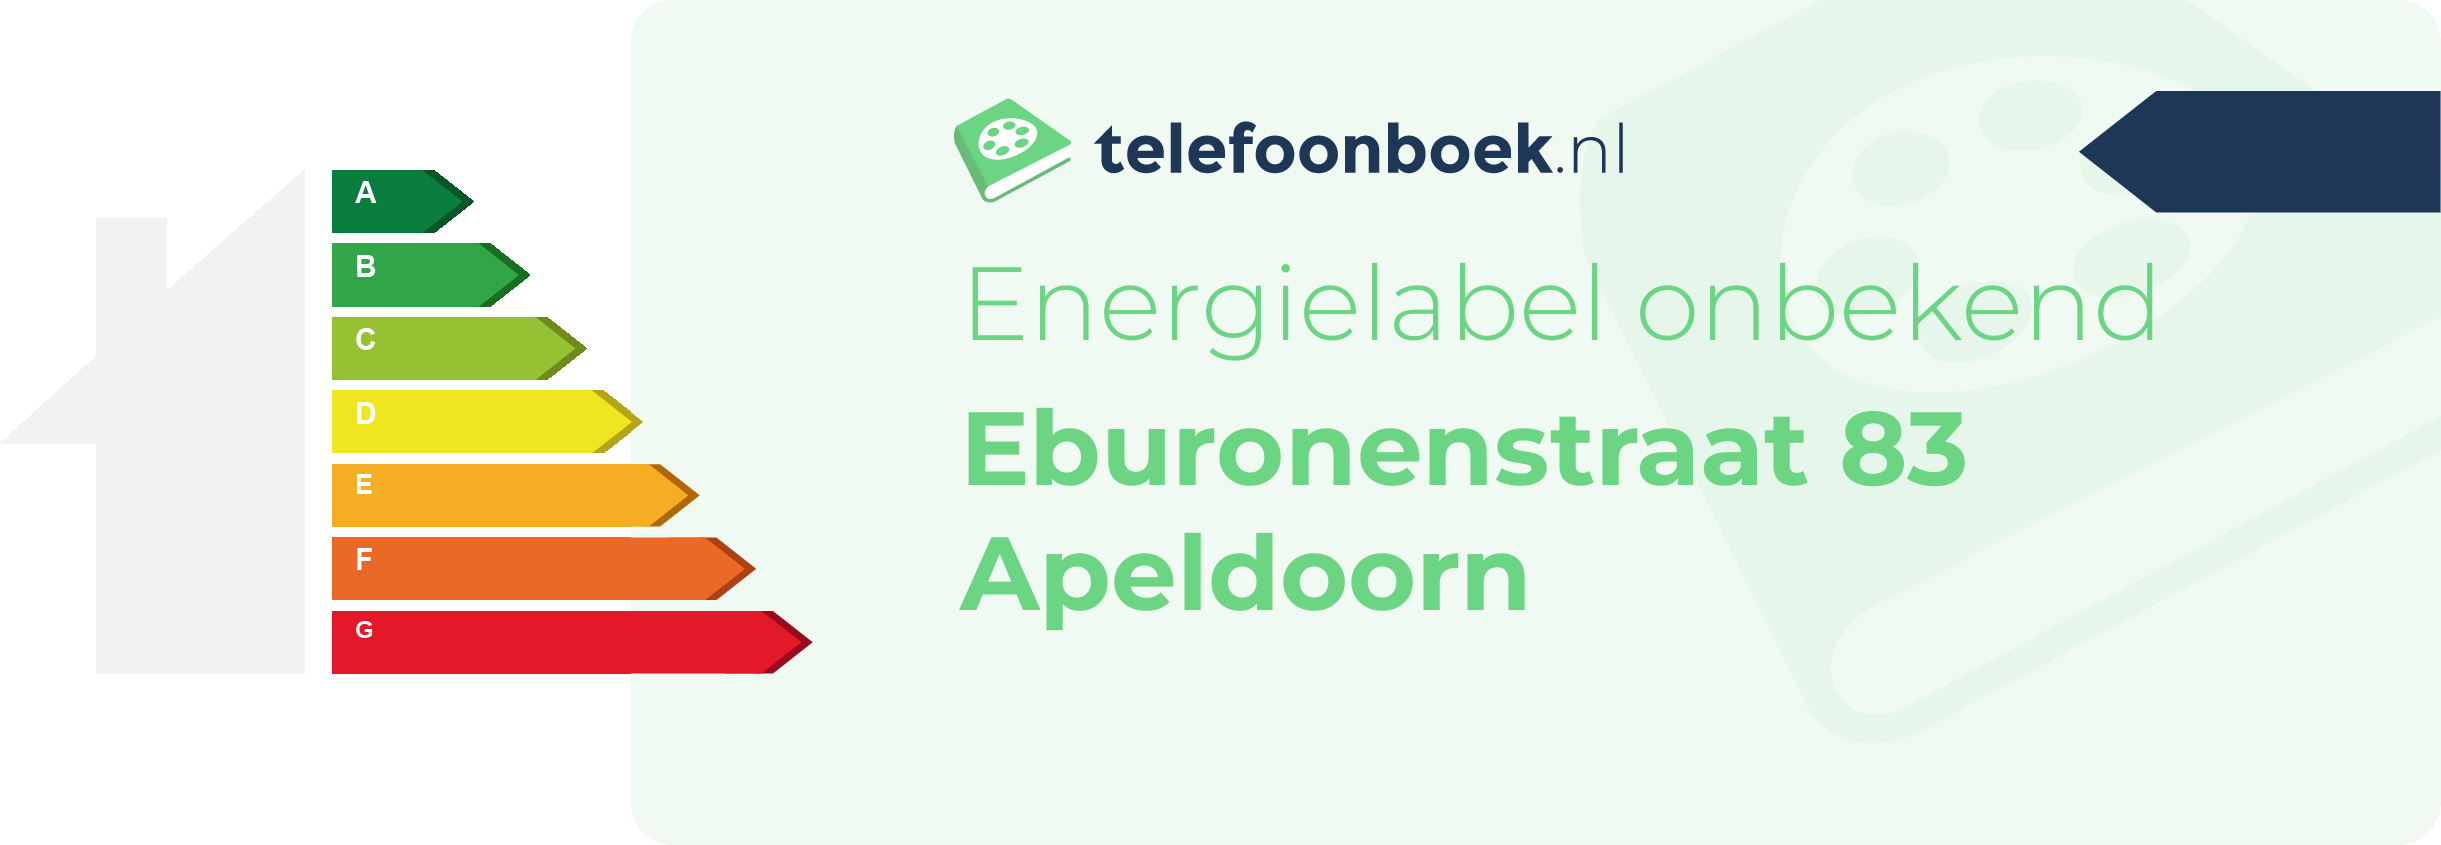 Energielabel Eburonenstraat 83 Apeldoorn